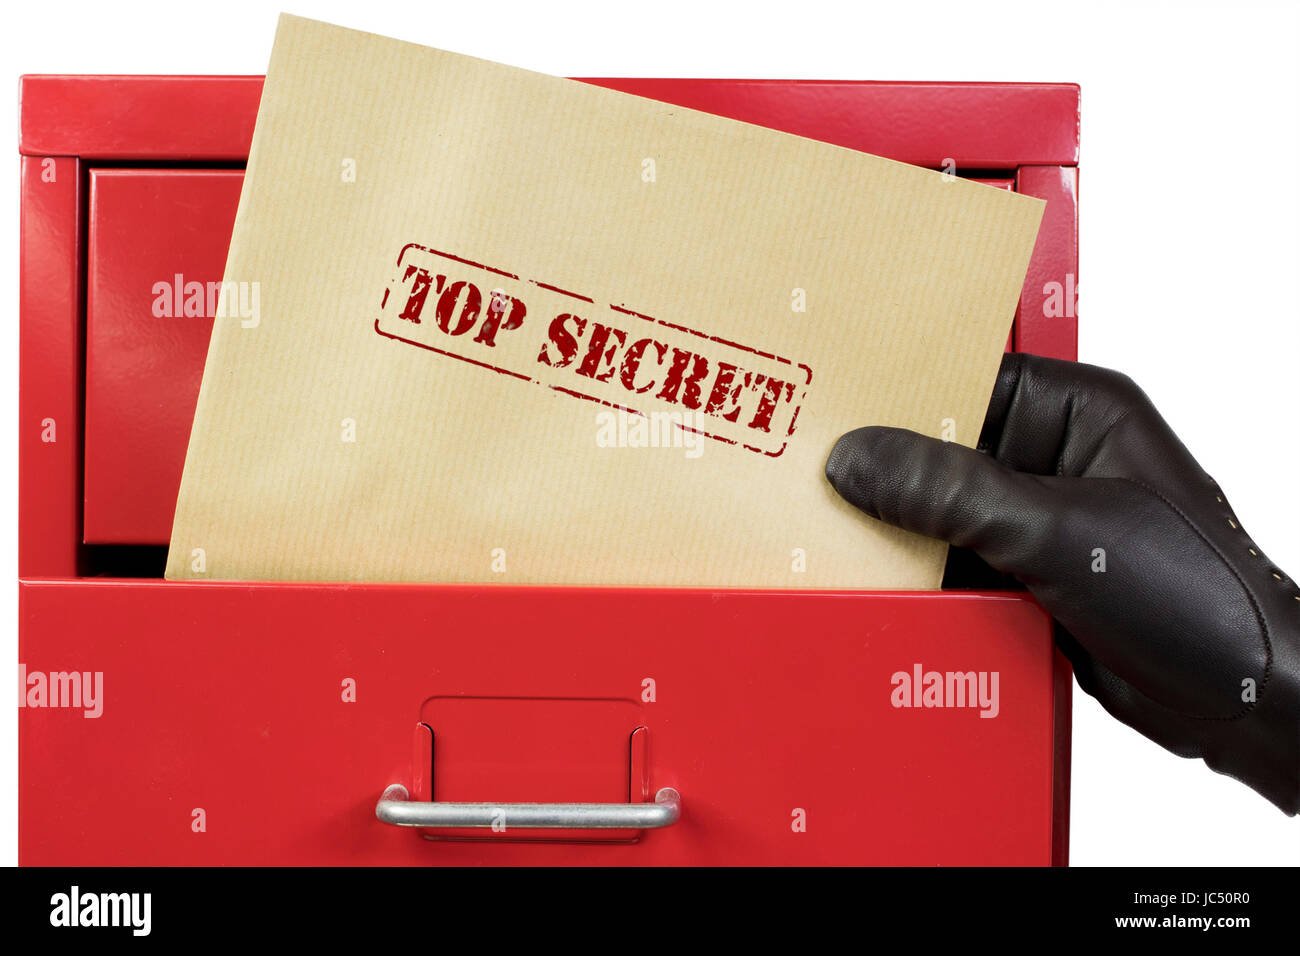 Obtención de top secret de un archivador, el rojo sobre un fondo blanco. Foto de stock